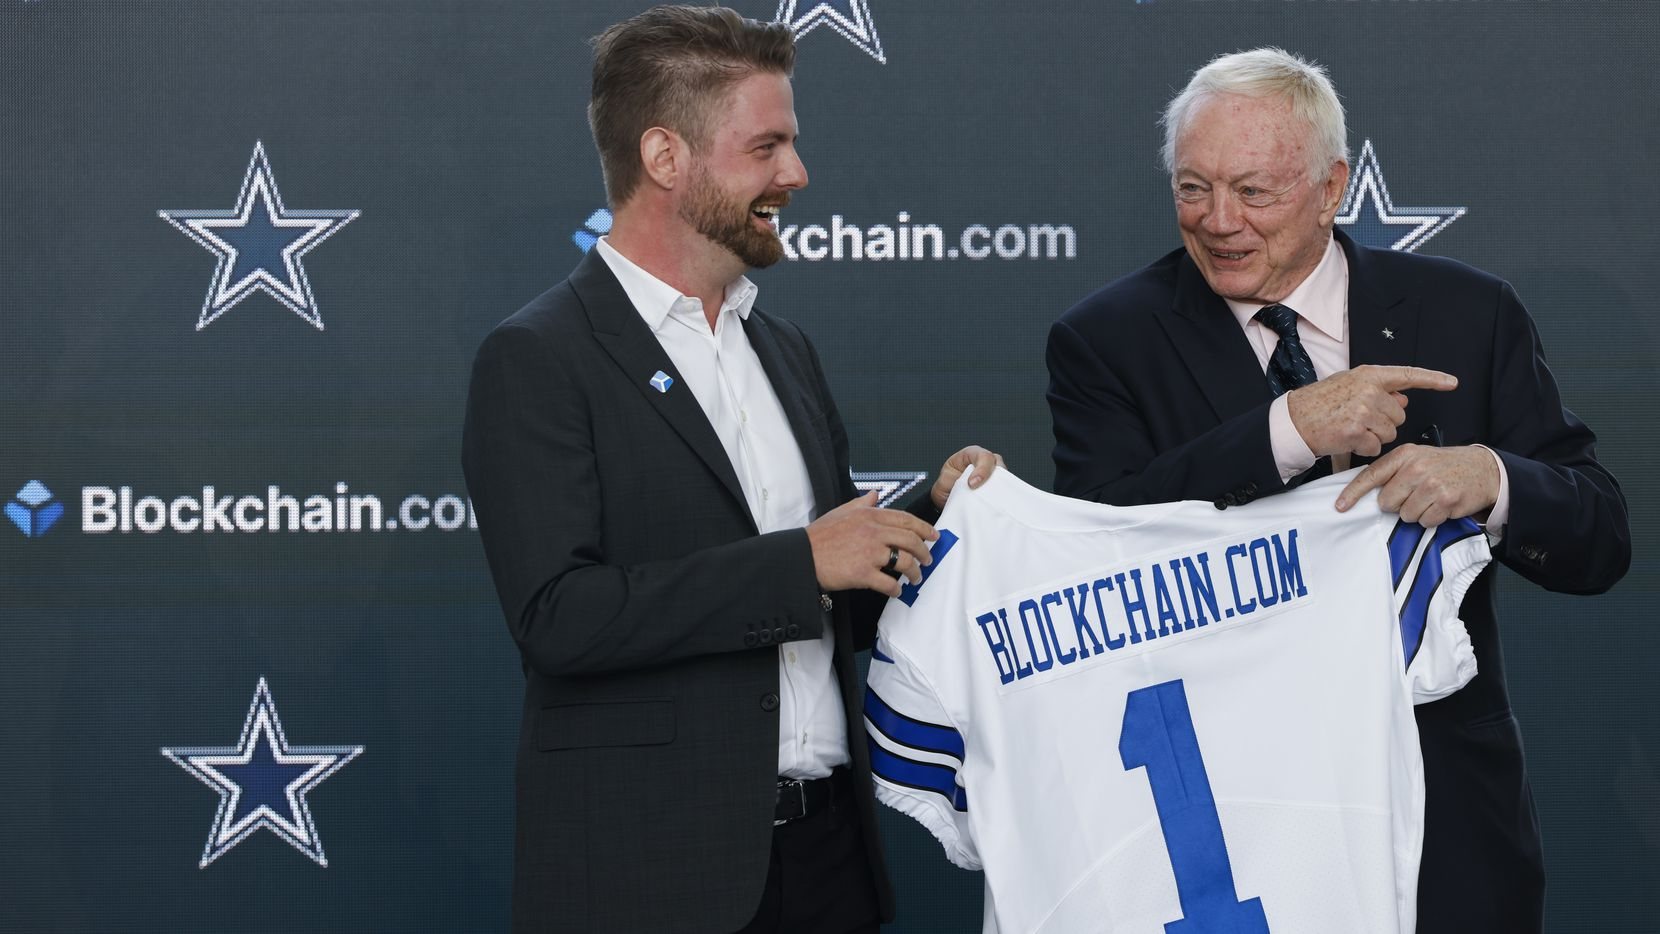 NFL Takımları Kriptoyu Kucaklamaya Başlarken Dallas Cowboys Blockchain.com ile Anlaştı